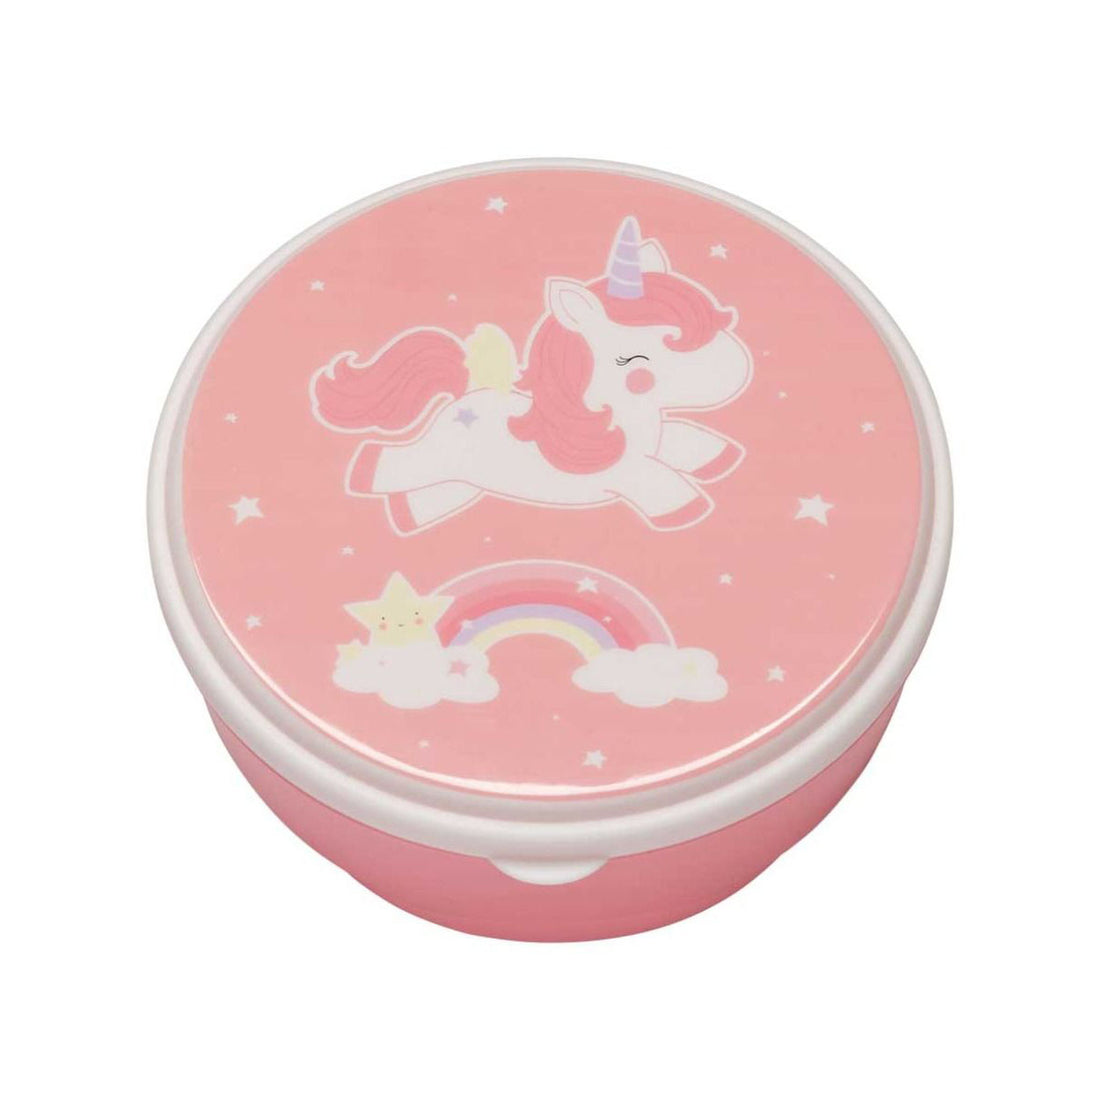 a-little-lovely-company-snack-box-unicorn- (1)